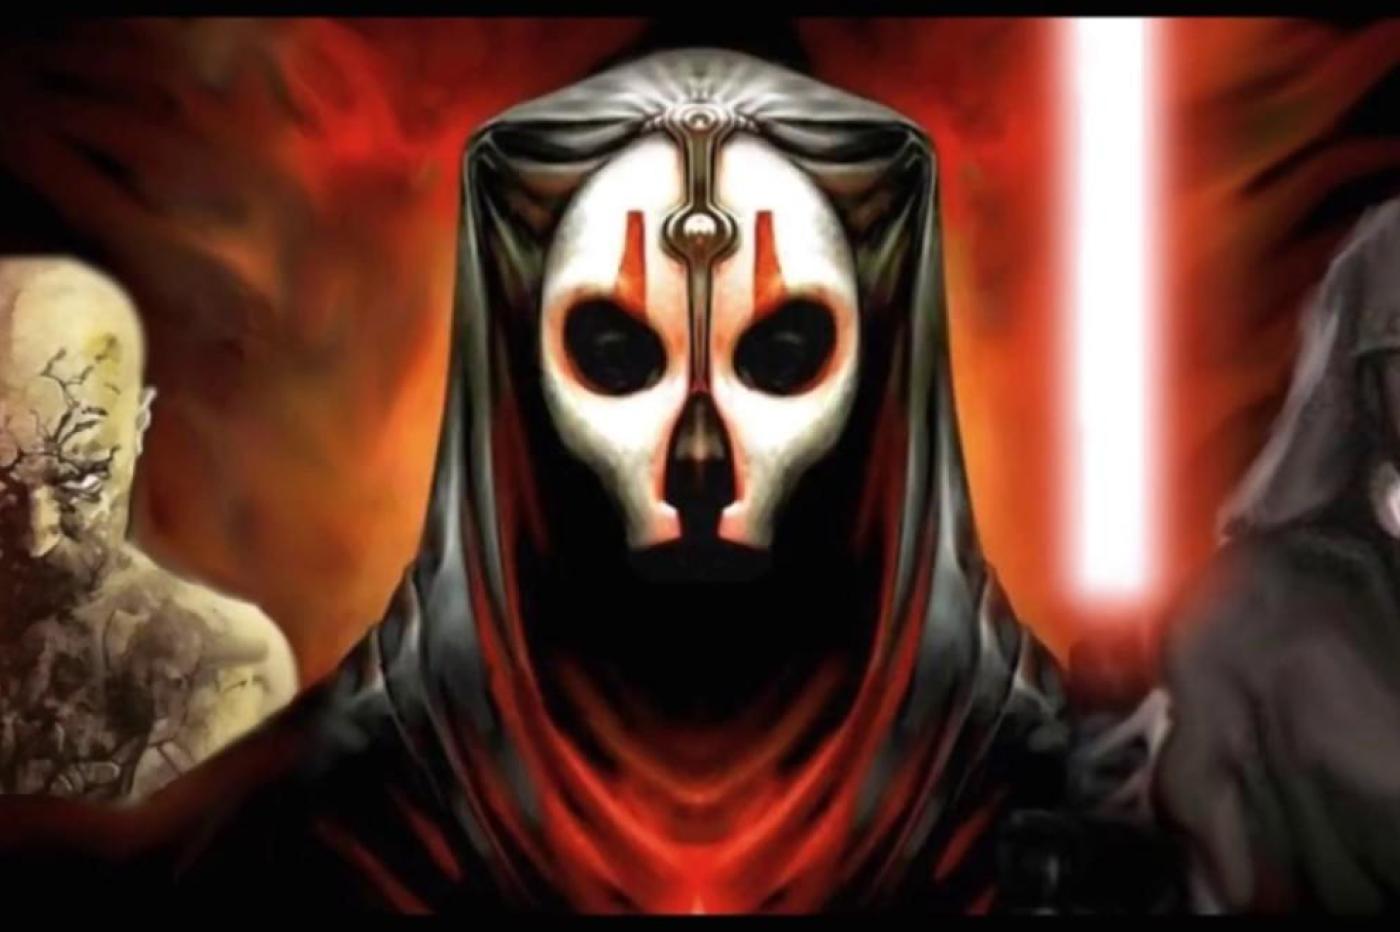 Image promotionnelle du jeu Star Wars Knights of the Old Republic II avec le méchant du jeu au centre